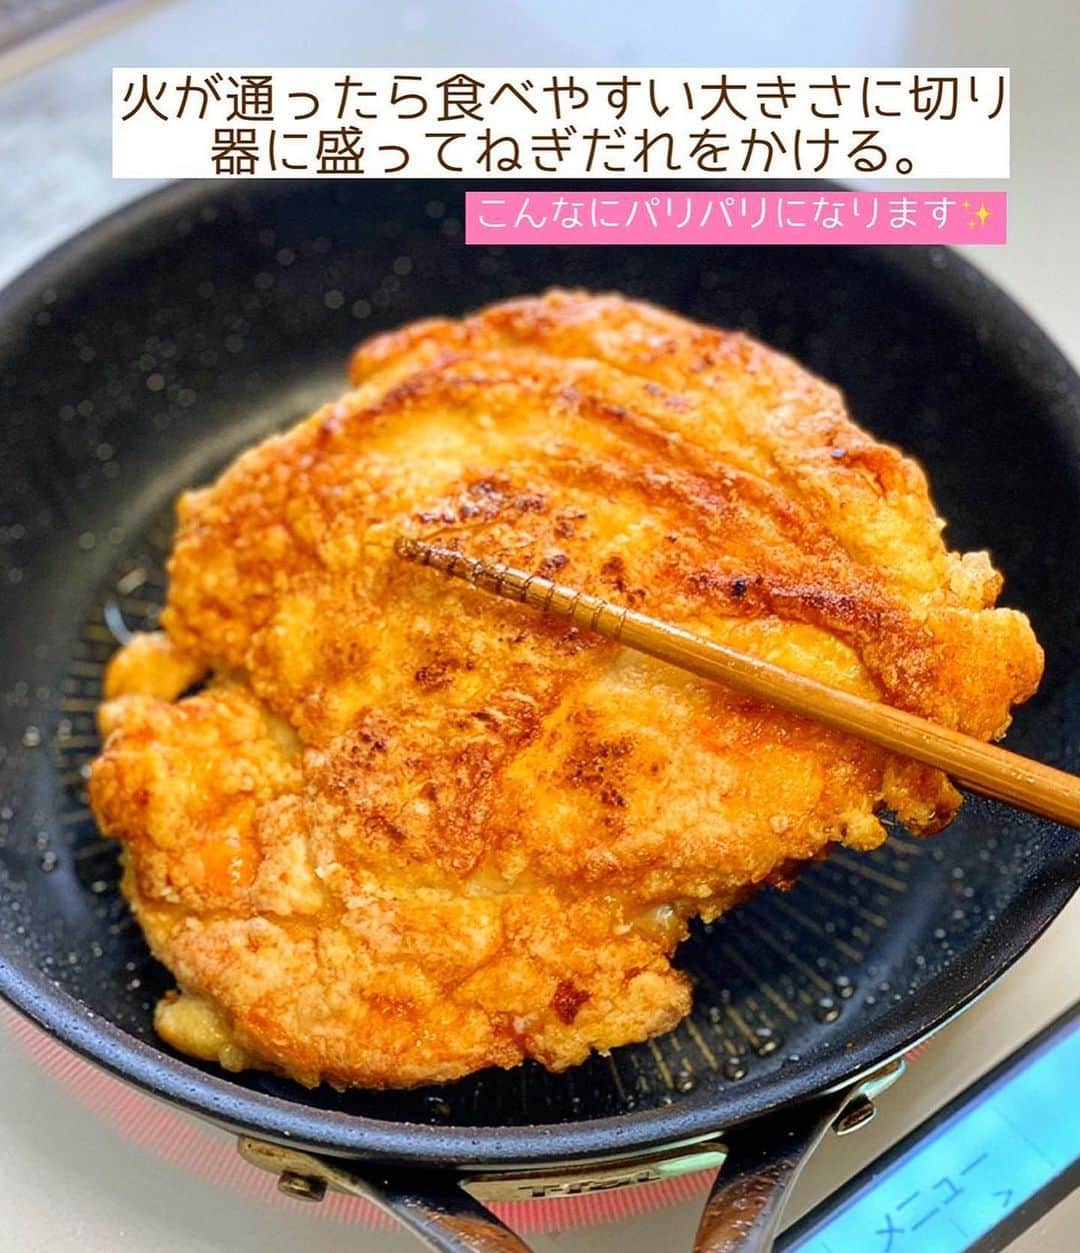 Mizuki【料理ブロガー・簡単レシピ】さんのインスタグラム写真 - (Mizuki【料理ブロガー・簡単レシピ】Instagram)「・コスパ抜群💕 ⁡ ［#レシピ ］ ーーーーーーーーーーーーーーーーーーーーー 鶏むね肉で！パリパリチキンのねぎだれがけ ーーーーーーーーーーーーーーーーーーーーー ⁡ ⁡ ⁡ おはようございます☺️ ⁡ 今日ご紹介させていただくのは 鶏むね肉のコスパおかず♩ \ パリパリチキンのねぎだれがけ / (再掲載✍️) ⁡ フライパンで焼いたむね肉に 風味満点のねぎだれをかけました💕 焼くだけでパリパリに仕上がり 食べ応えもアップしますよ〜😋 ⁡ 簡単にできてコスパ抜群なので よかったらお試しくださいね✨ ⁡ ⁡ ⁡ ⋱⋰ ⋱⋰ ⋱⋰ ⋱⋰ ⋱⋰ ⋱⋰ ⋱⋰ 📍簡単・時短・節約レシピ更新中  Threadsもこちらから▼ @mizuki_31cafe ⁡ 📍謎の暮らし＆変なライブ垢 @mizuki_kurashi ⋱⋰ ⋱⋰ ⋱⋰ ⋱⋰ ⋱⋰ ⋱⋰ ⋱⋰ ⁡ ⁡ ⁡ ＿＿＿＿＿＿＿＿＿＿＿＿＿＿＿＿＿＿＿ 【2人分】 鶏むね肉...大1枚(300g) ●酒・醤油...各小1 片栗粉...適量 サラダ油...大1 ☆長ねぎ(みじん切り)...10cm ☆生姜(みじん切り)...1/2かけ ☆醤油・酢...各大1.5 ☆砂糖・ごま油...各小2 ⁡ 1.☆を混ぜてねぎだれを作る。鶏肉は厚みを開いてフォークで刺し、●を揉み込み片栗粉をまぶす。 2.小さめのフライパンにサラダ油を中火で熱し、鶏肉を皮目から焼く。こんがりしたら裏返し、更に3分ほど焼いて火を通す(時々フライ返しで押さえるとよりパリパリに♩)。 3.2を食べやすい大きさに切って器に盛り、1のねぎだれをかける。 ￣￣￣￣￣￣￣￣￣￣￣￣￣￣￣￣￣￣￣ ⁡ ⁡ 《ポイント》 ♦︎鶏肉は厚みが半分くらいになるよう観音開きにしています♩真ん中の身の厚い部分に包丁を入れ、左右に開くと◎ ♦︎片栗粉はたっぷりまぶすとパリパリに仕上がります♩ ♦︎鶏肉はこんがり(しっかり)焼き色が付いてから裏返して下さい♩ ♦︎直径22cmのフライパンを使用しました♩小さなフライパンに鶏肉をドーンと入れると油の嵩が上がります♩ ⁡ ⁡ ⁡ ⁡ ⁡ ⁡ 💬💬💬 (いつできるかわからない) 本の撮影がはじまりました🌸 しばらくの間 投稿したり、できなかったり お返事できないこともあると思いますが よろしくお願いいたします🙇‍♀️✨ ⁡ ⁡ ⁡ ⁡ ⁡ ⋱⋰ ⋱⋰ ⋱⋰ ⋱⋰ ⋱⋰ ⋱⋰ ⋱⋰  愛用している調理器具・器など   #楽天ROOMに載せてます ‎𐩢𐩺  (ハイライトから飛べます🕊️) ⋱⋰ ⋱⋰ ⋱⋰ ⋱⋰ ⋱⋰ ⋱⋰ ⋱⋰ ⁡ ⁡ ⁡ ⁡ ⁡ ✼••┈┈┈┈┈••✼••┈┈┈┈┈••✼ 今日のごはんこれに決まり！ ‎𓊆#Mizukiのレシピノート 500品𓊇 ✼••┈┈┈┈┈••✼••┈┈┈┈┈••✼ ⁡ ˗ˏˋ おかげさまで25万部突破 ˎˊ˗ 料理レシピ本大賞準大賞を受賞しました✨ ⁡ 6000点の中からレシピを厳選し まさかの【500レシピ掲載】 肉や魚のメインおかずはもちろん 副菜、丼、麺、スープ、お菓子 ハレの日のレシピ、鍋のレシピまで 全てこの一冊で完結 𓌉◯𓇋 (全国の書店・ネット書店で発売中) ⁡ ⁡ ⁡ ⁡ ⁡ ⁡ #パリパリチキンのねぎだれがけm #パリパリチキン  #鶏むね肉 #鶏むね肉レシピ #ねぎだれ  #ヘルシー  #焼くだけ #節約料理  #簡単料理  #時短料理 #mizukiレシピ  #時短レシピ #節約レシピ #簡単レシピ」10月7日 7時14分 - mizuki_31cafe